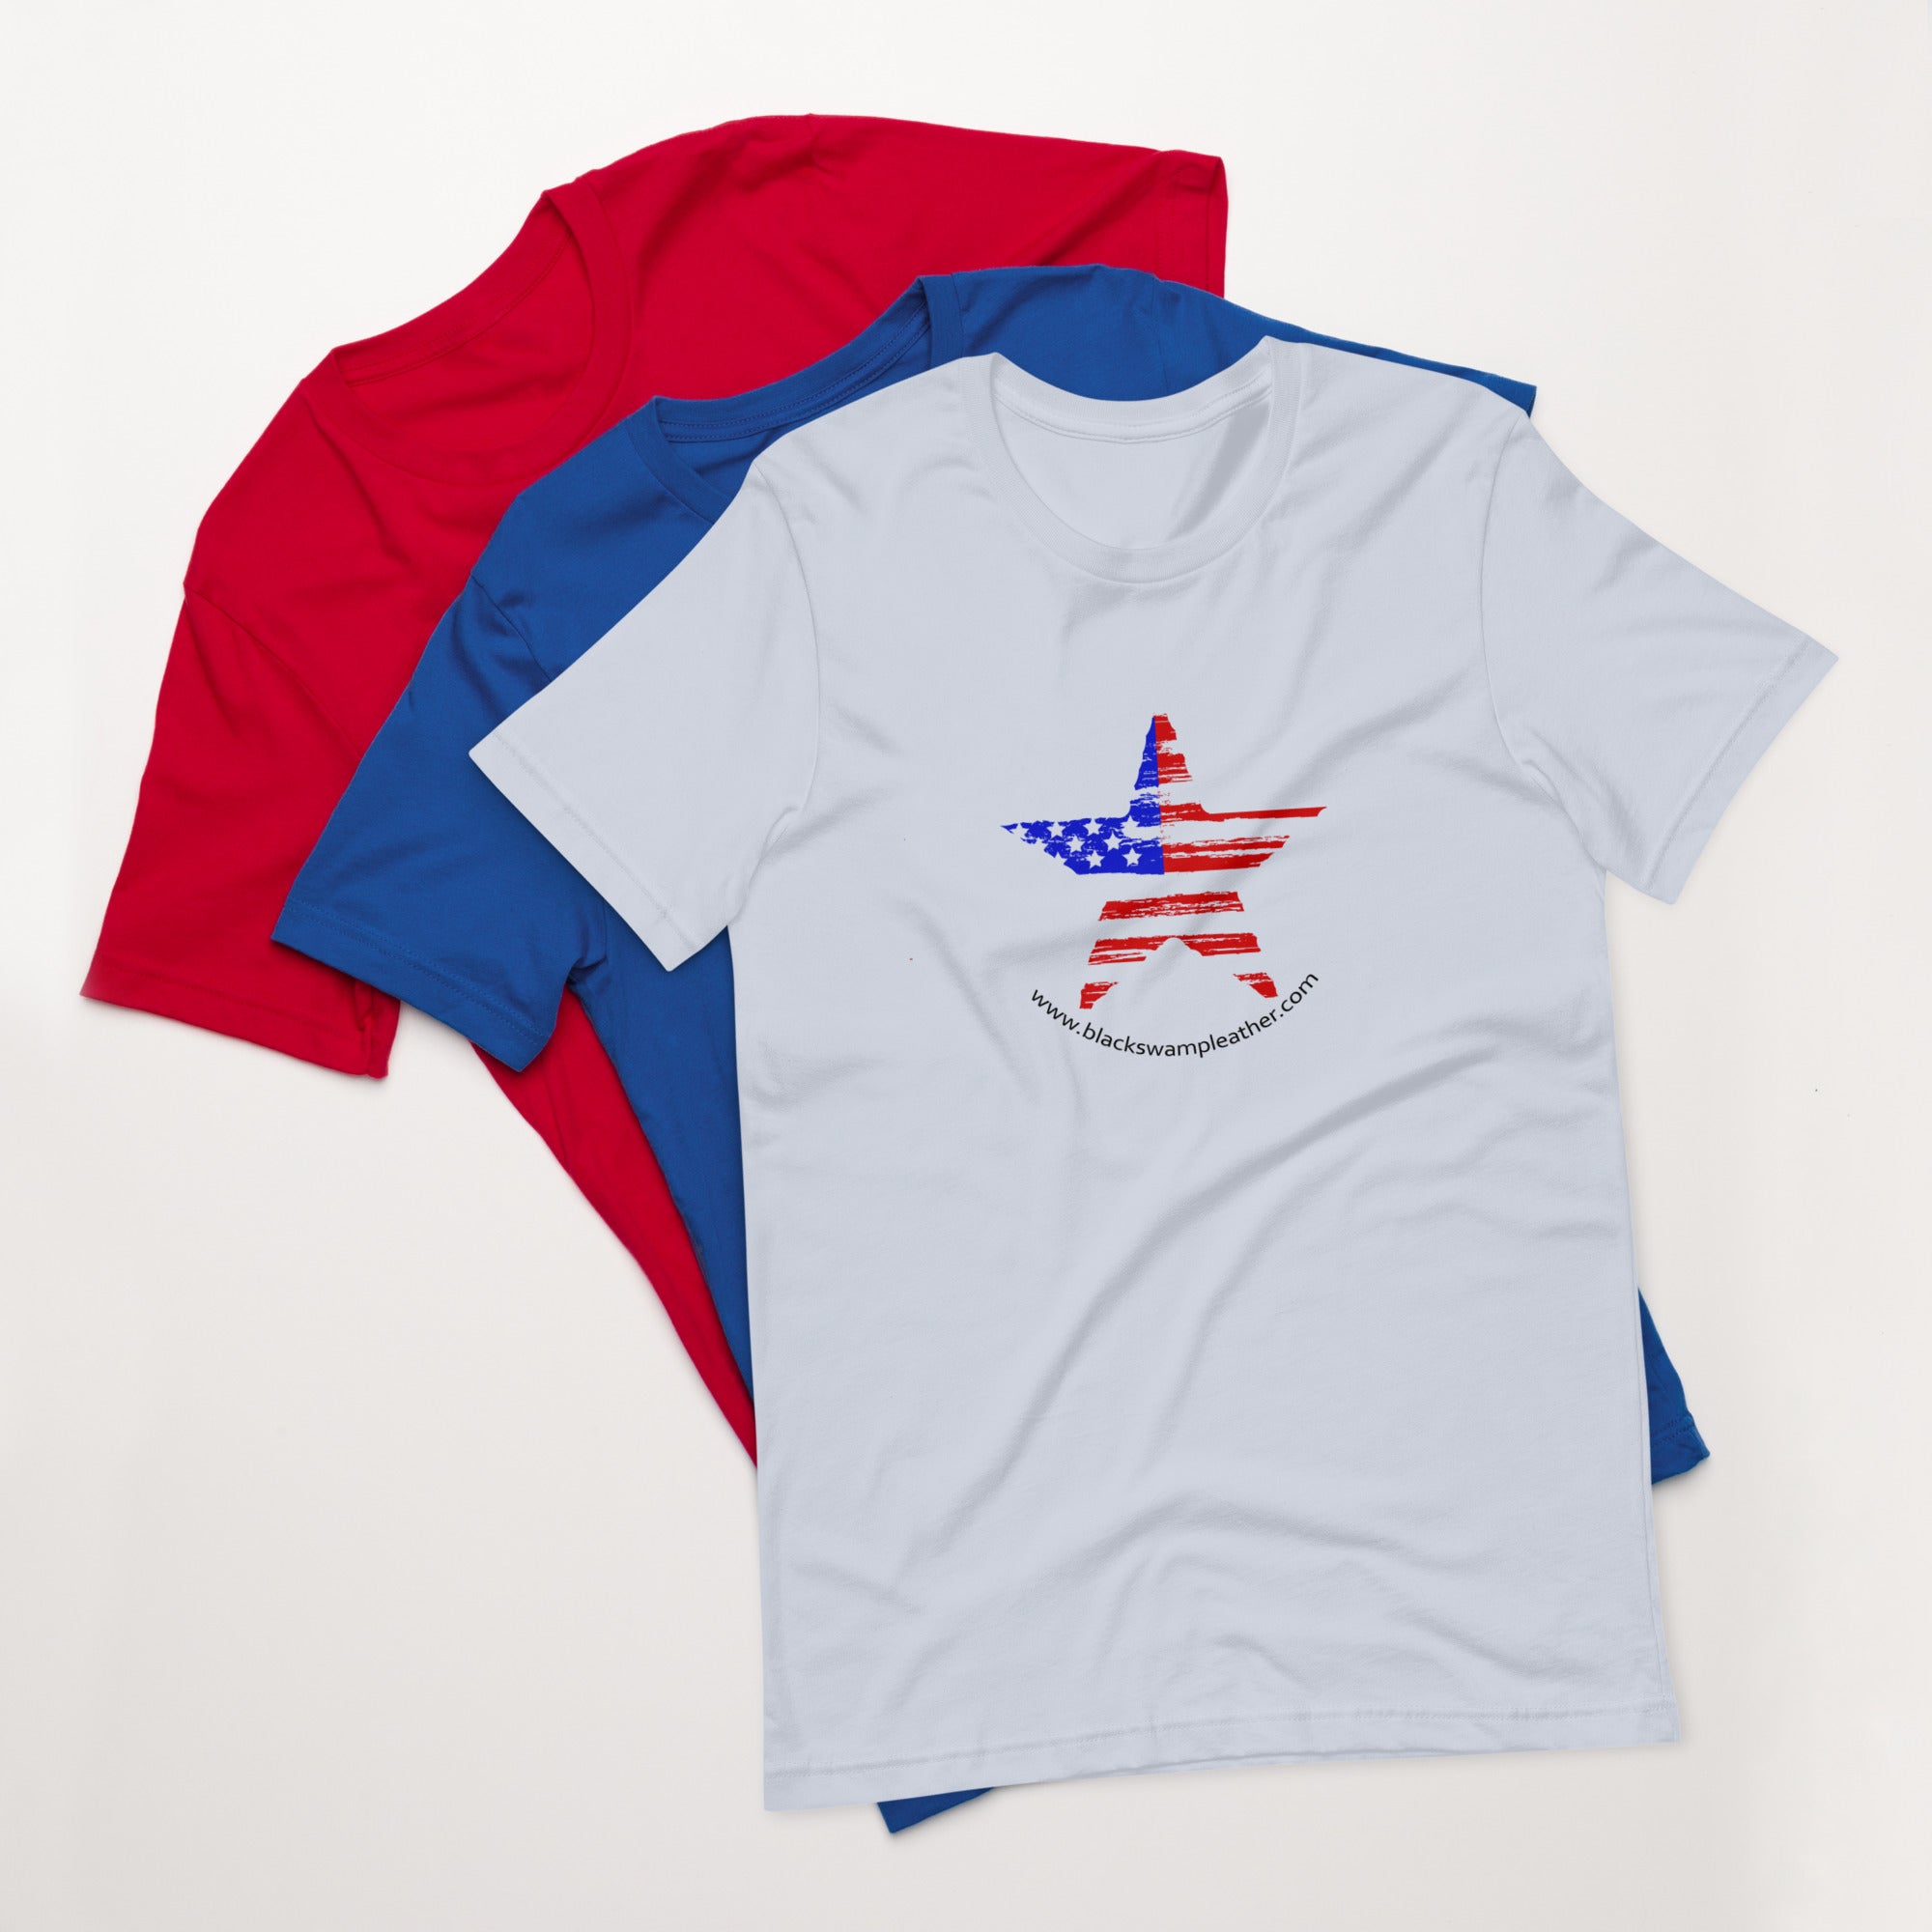 USA Star Unisex t-shirt